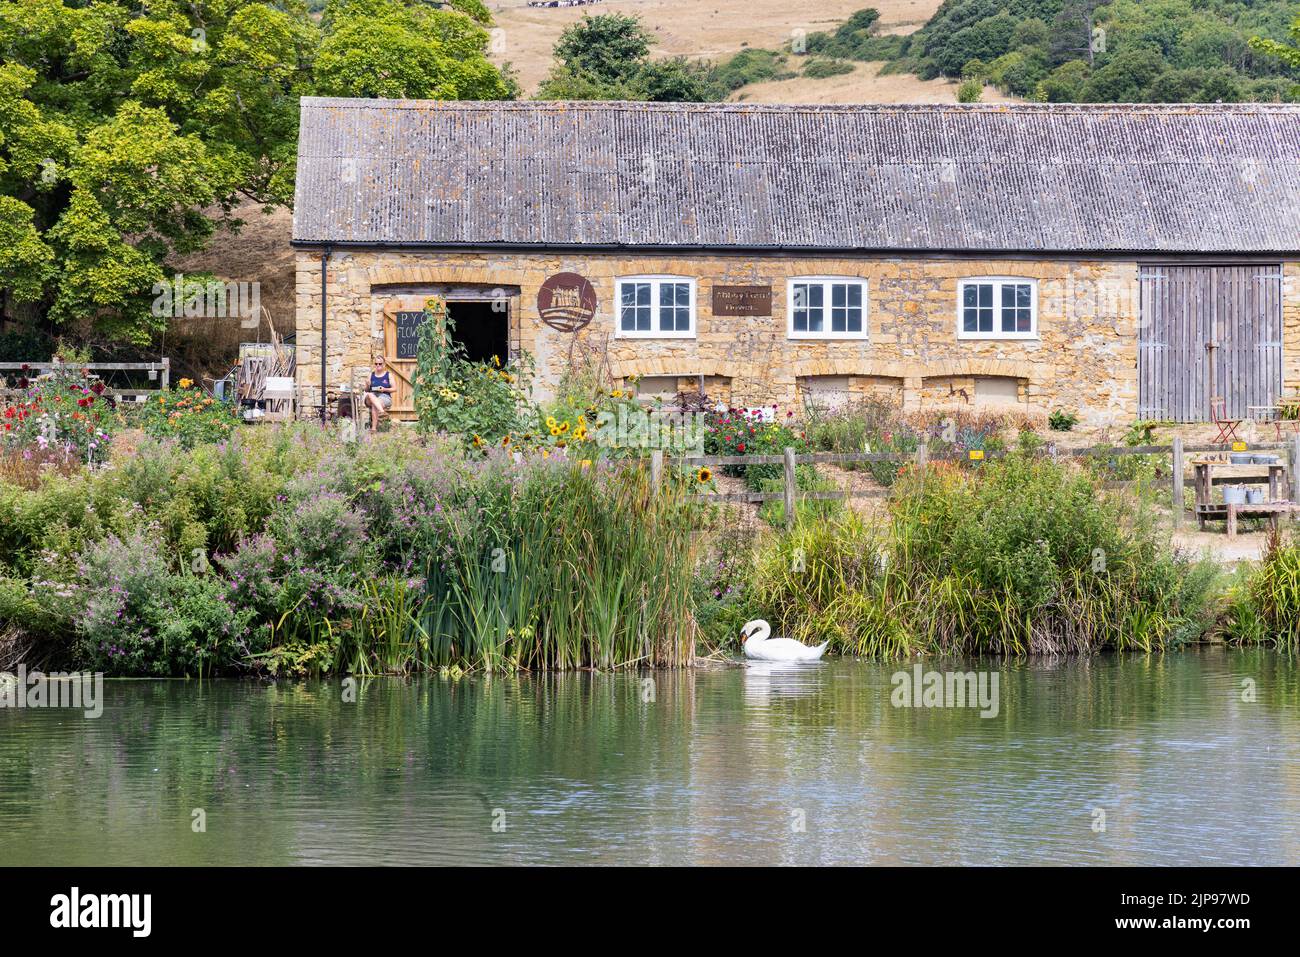 Friedliche englische Landschaft im Sommer, mit See, Schwan, Bauernhaus und Blumengeschäft, Abbotsbury, Dorset Südwesten englands, Großbritannien; Stockfoto